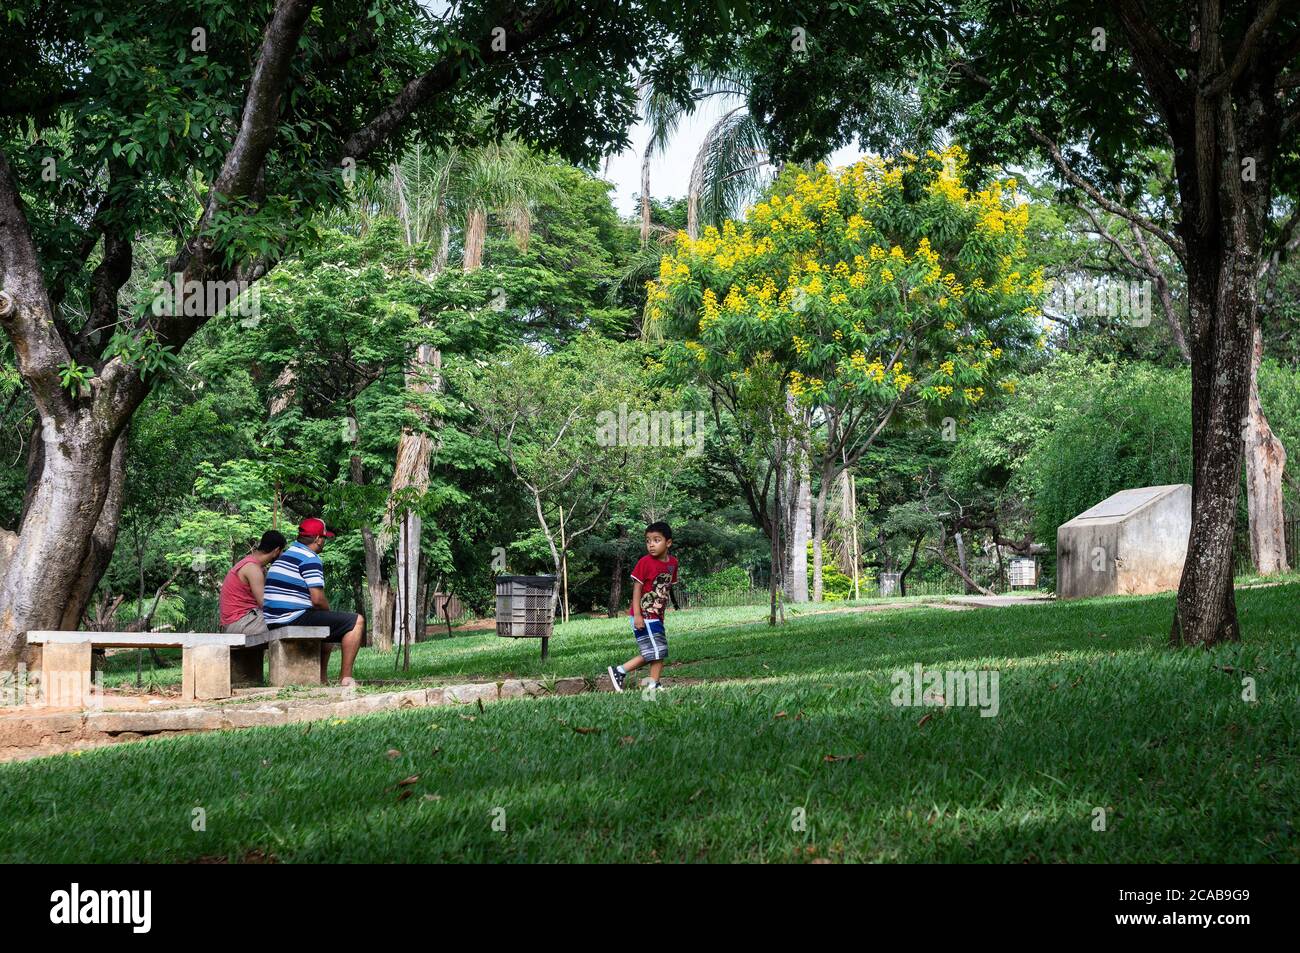 Les visiteurs du parc apprécient les espaces verts du jardin zoologique de Belo Horizonte en fin d'après-midi d'été. Banque D'Images